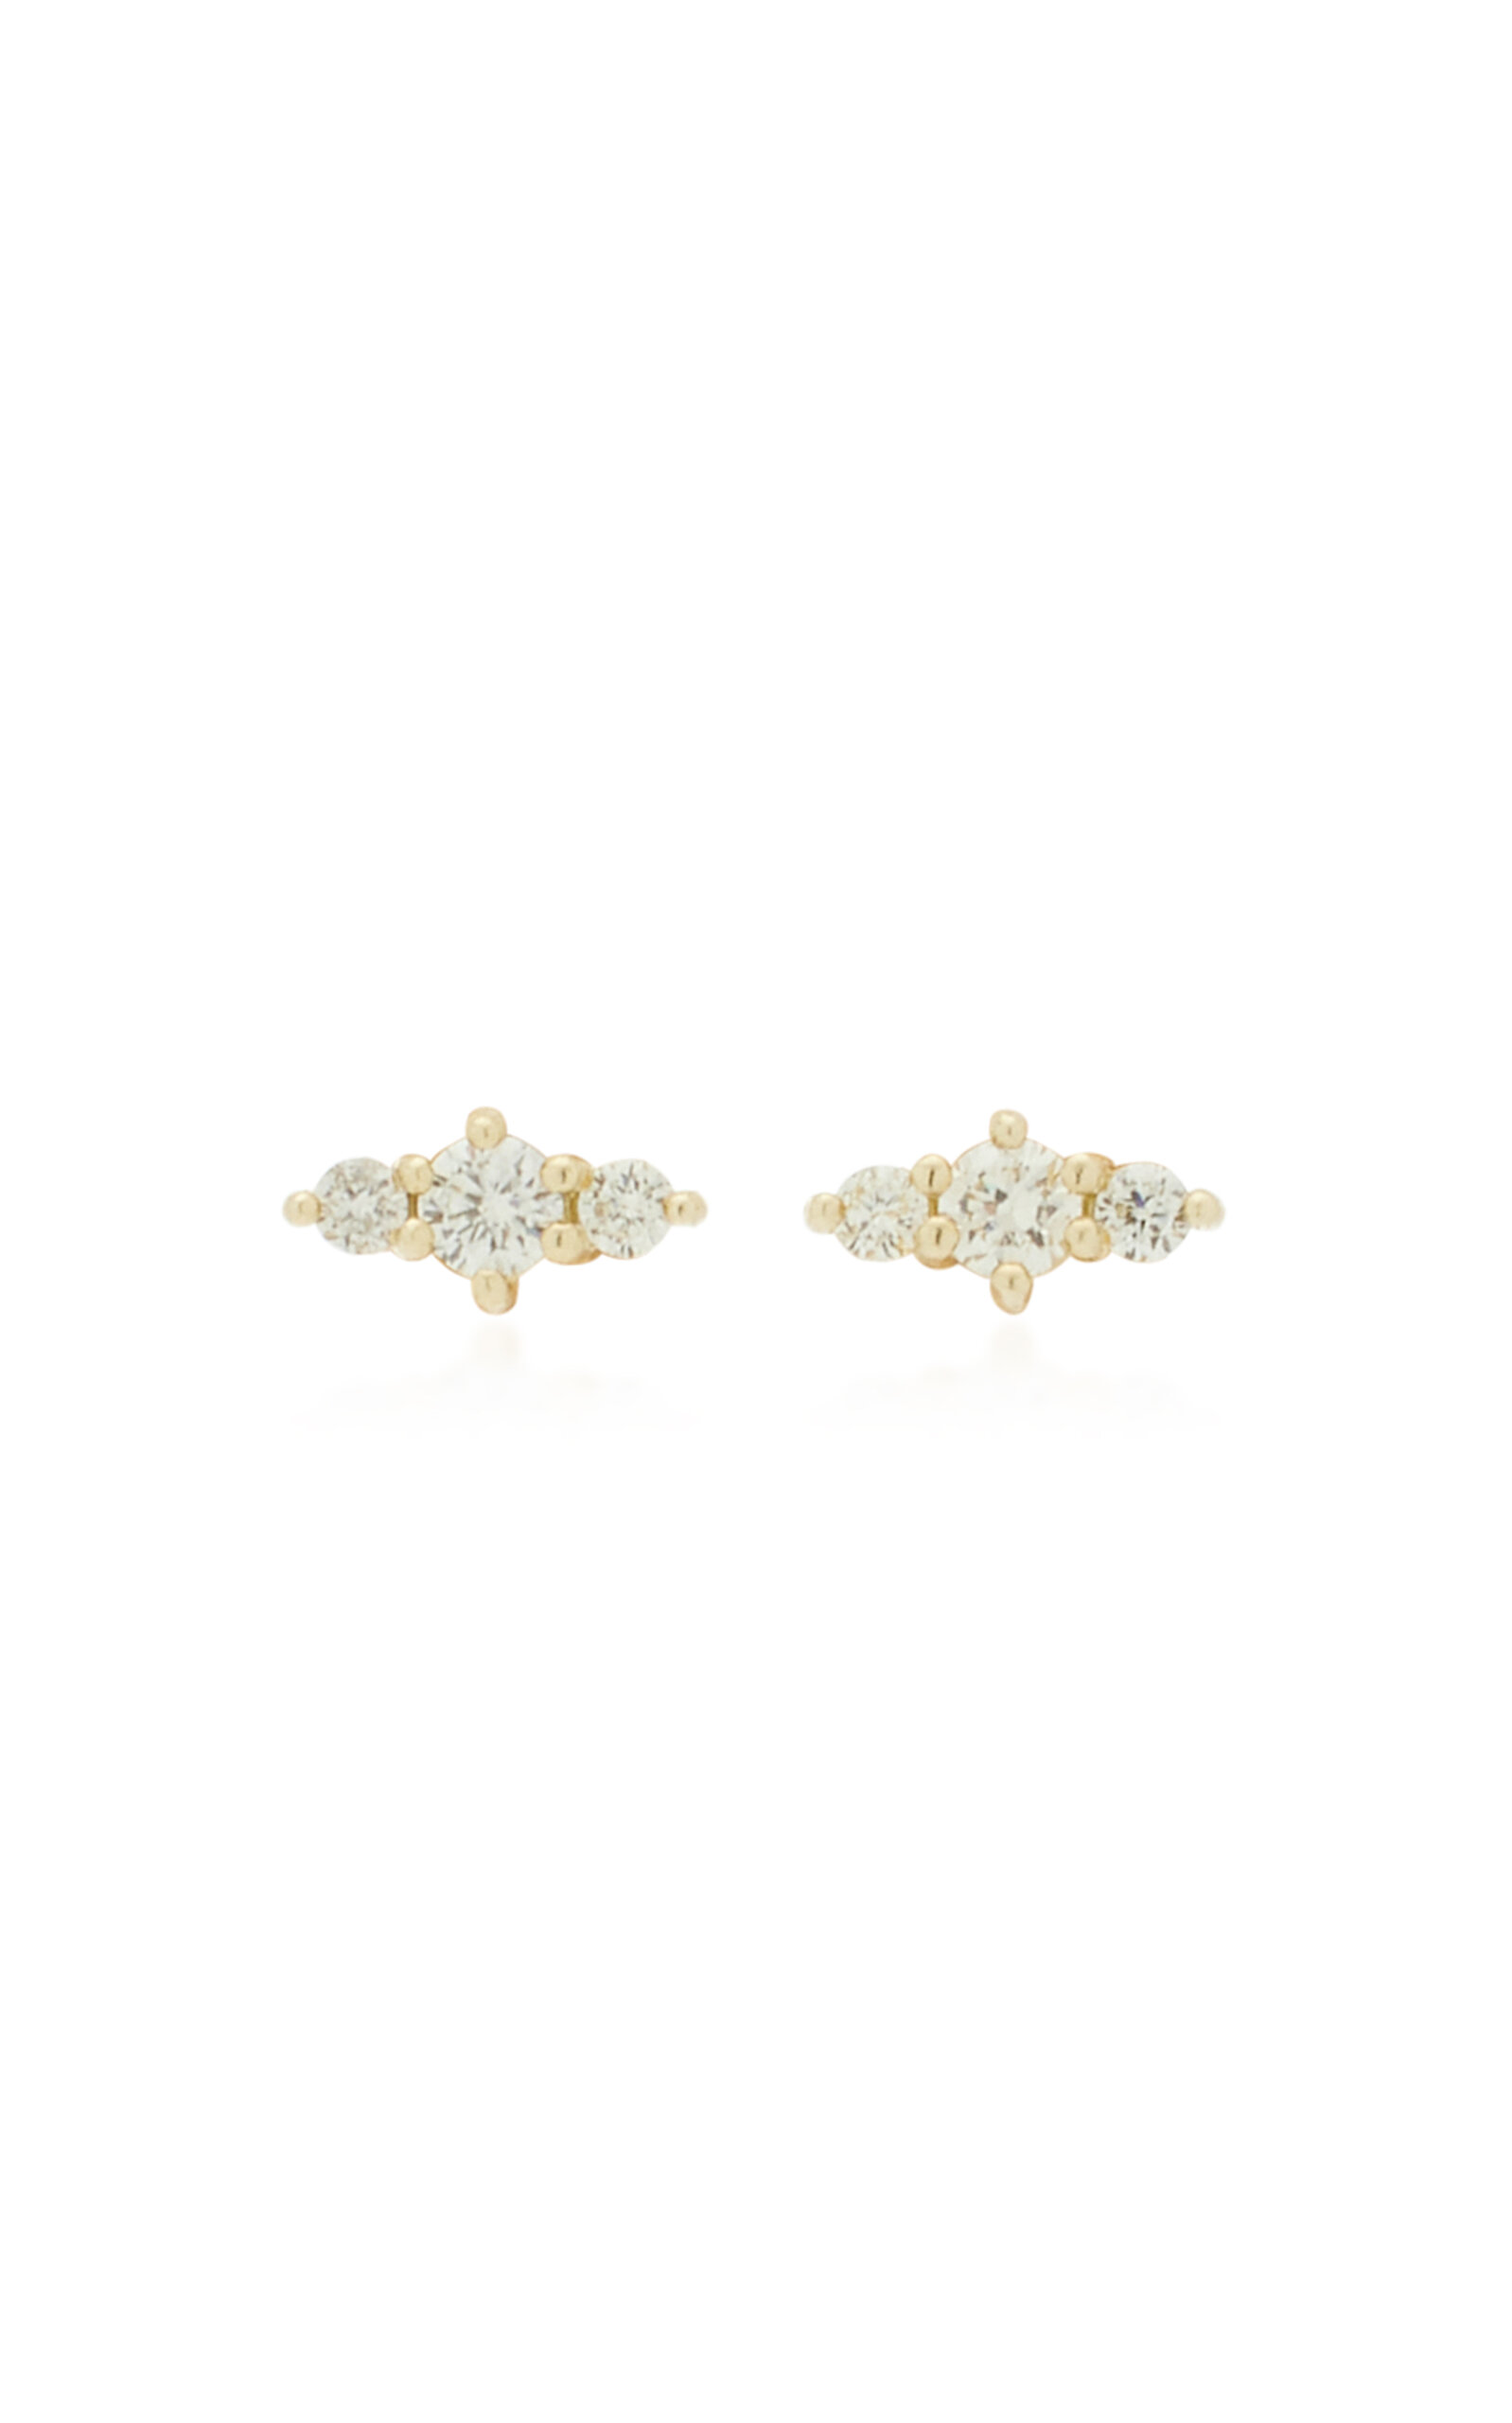 Hanley 14K Yellow Gold Diamond Earrings